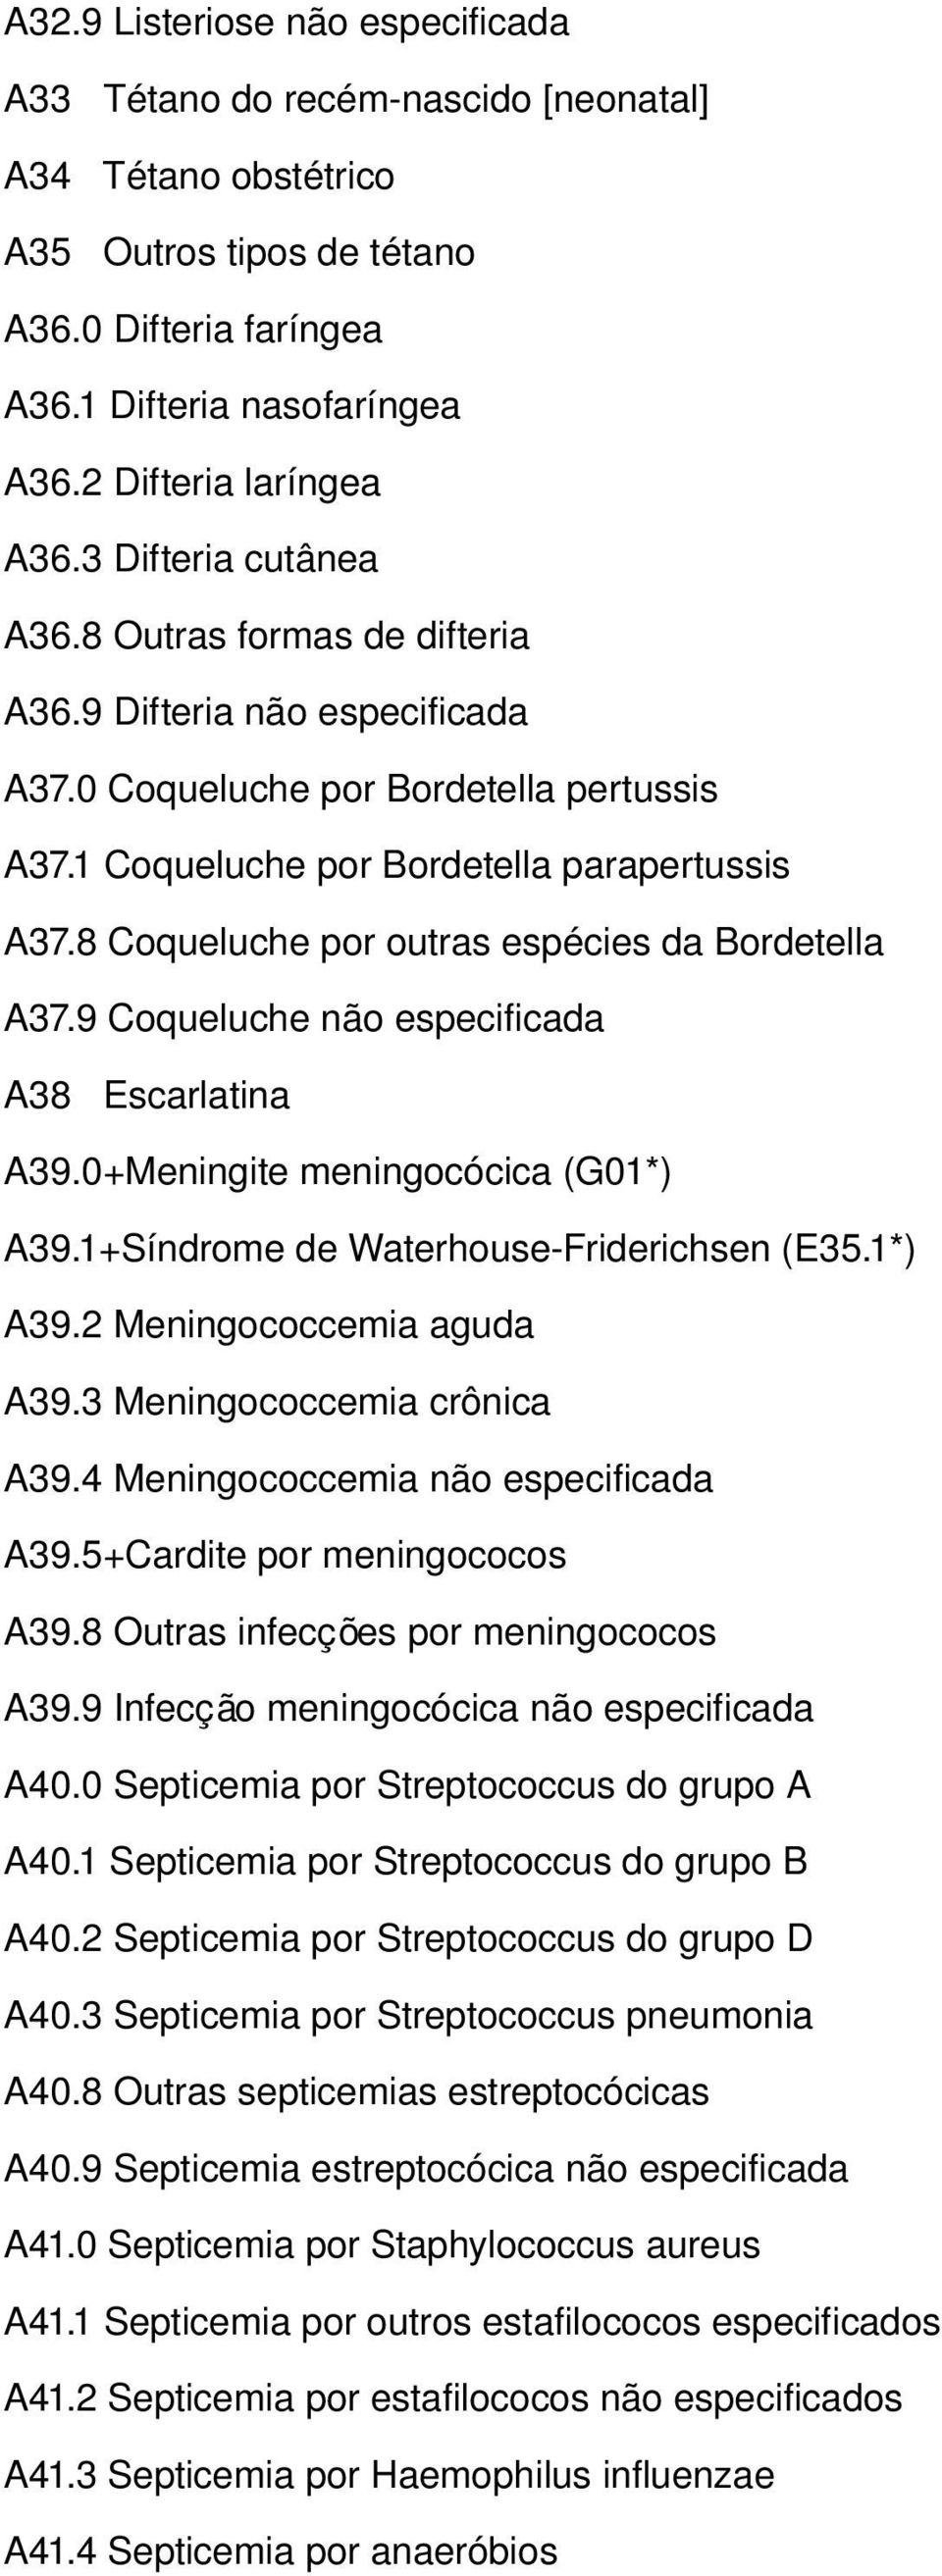 8 Coqueluche por outras espécies da Bordetella A37.9 Coqueluche não especificada A38 Escarlatina A39.0+Meningite meningocócica (G01*) A39.1+Síndrome de Waterhouse Friderichsen (E35.1*) A39.2 Meningococcemia aguda A39.